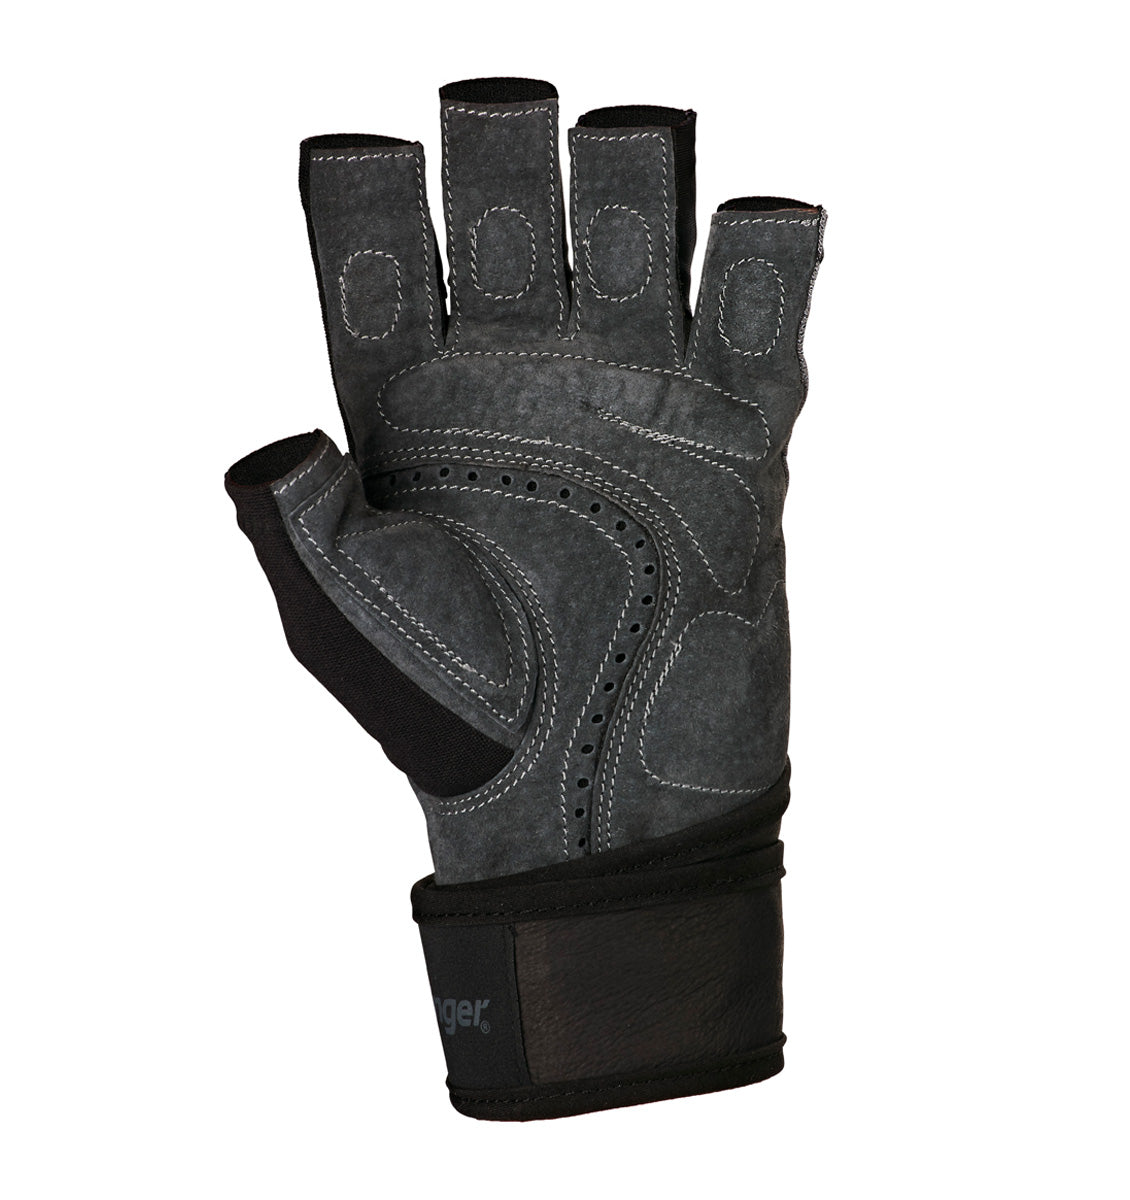 Harbinger Bioflex Elite Wrist Wrap Glove - 2